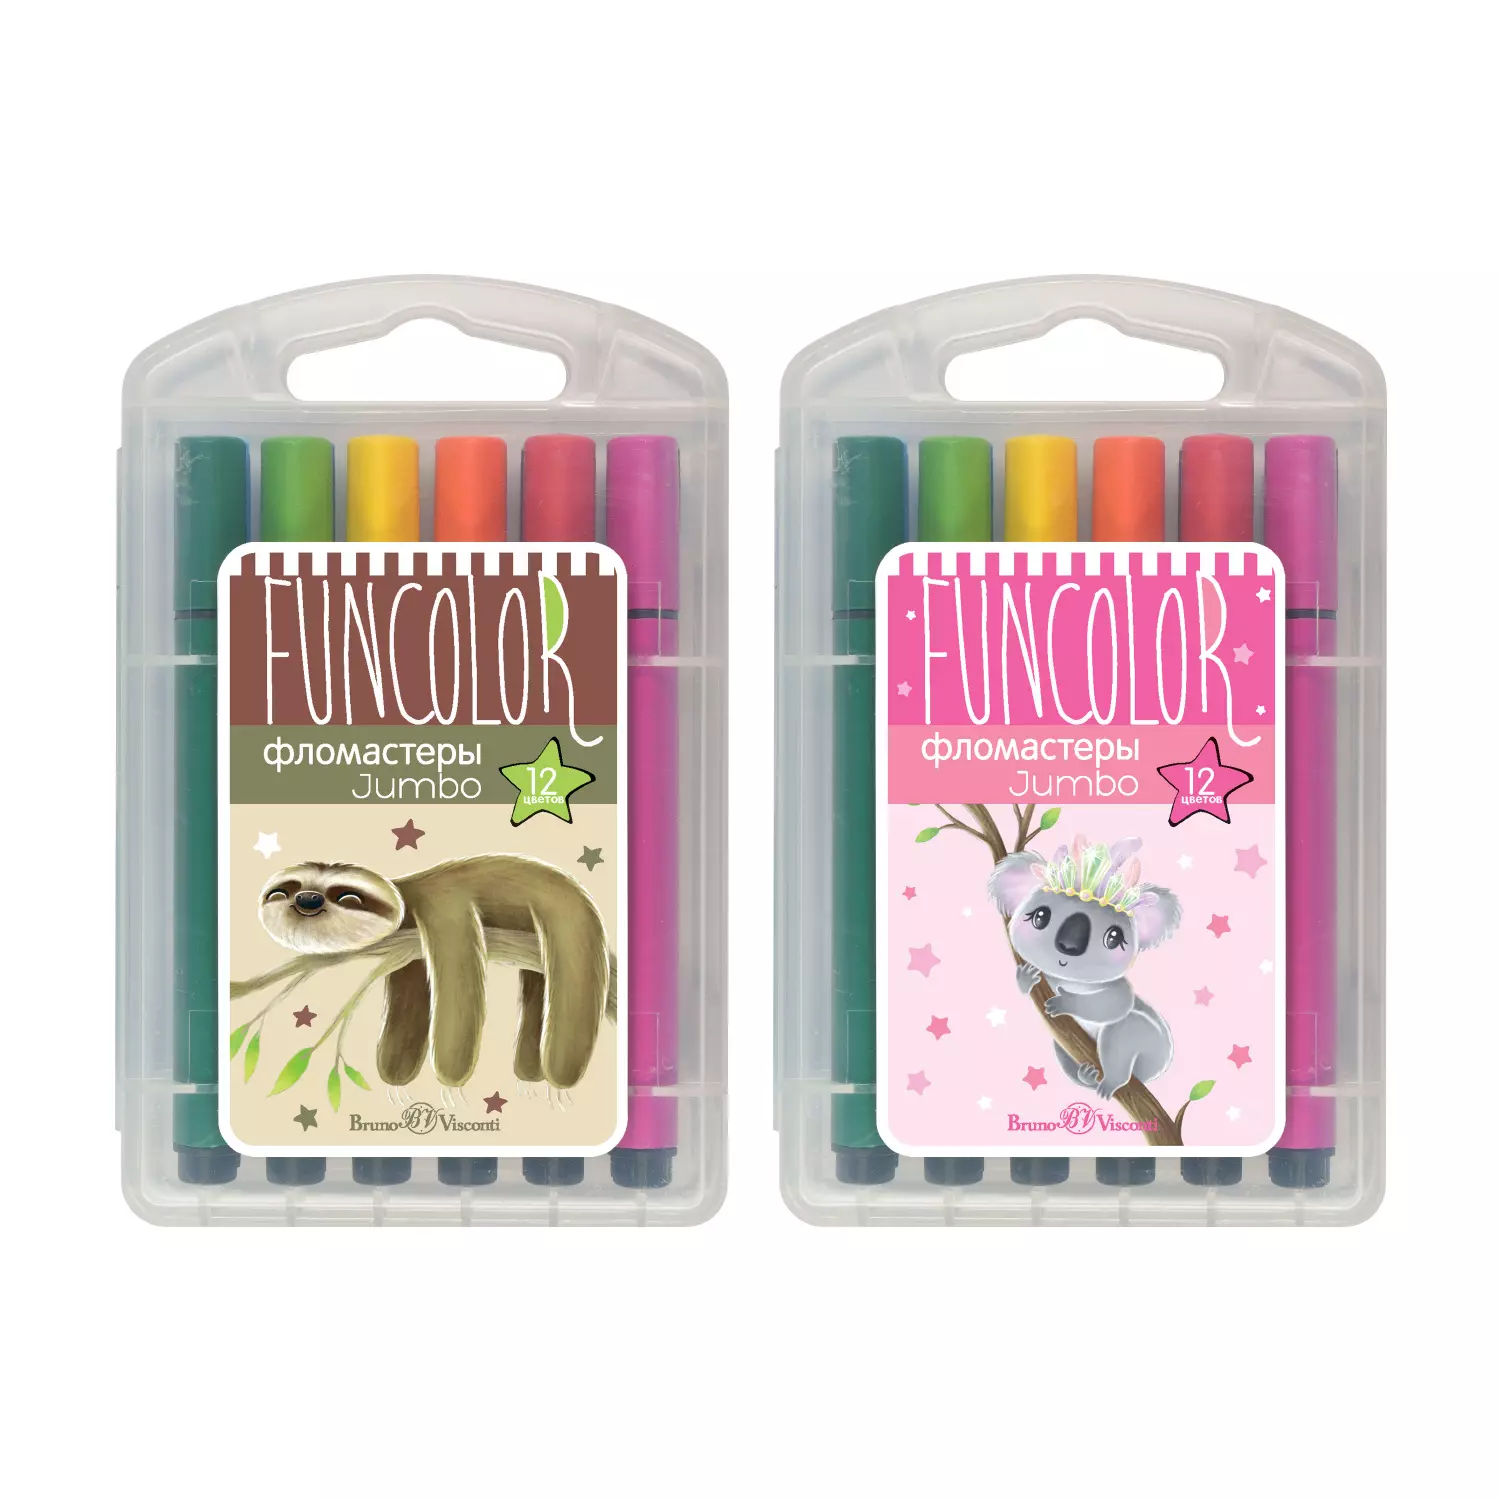 Фломастеры BrunoVisconti утолщенные, 12 цветов, 2 вида пластиковый пенал FunColor Jumbo